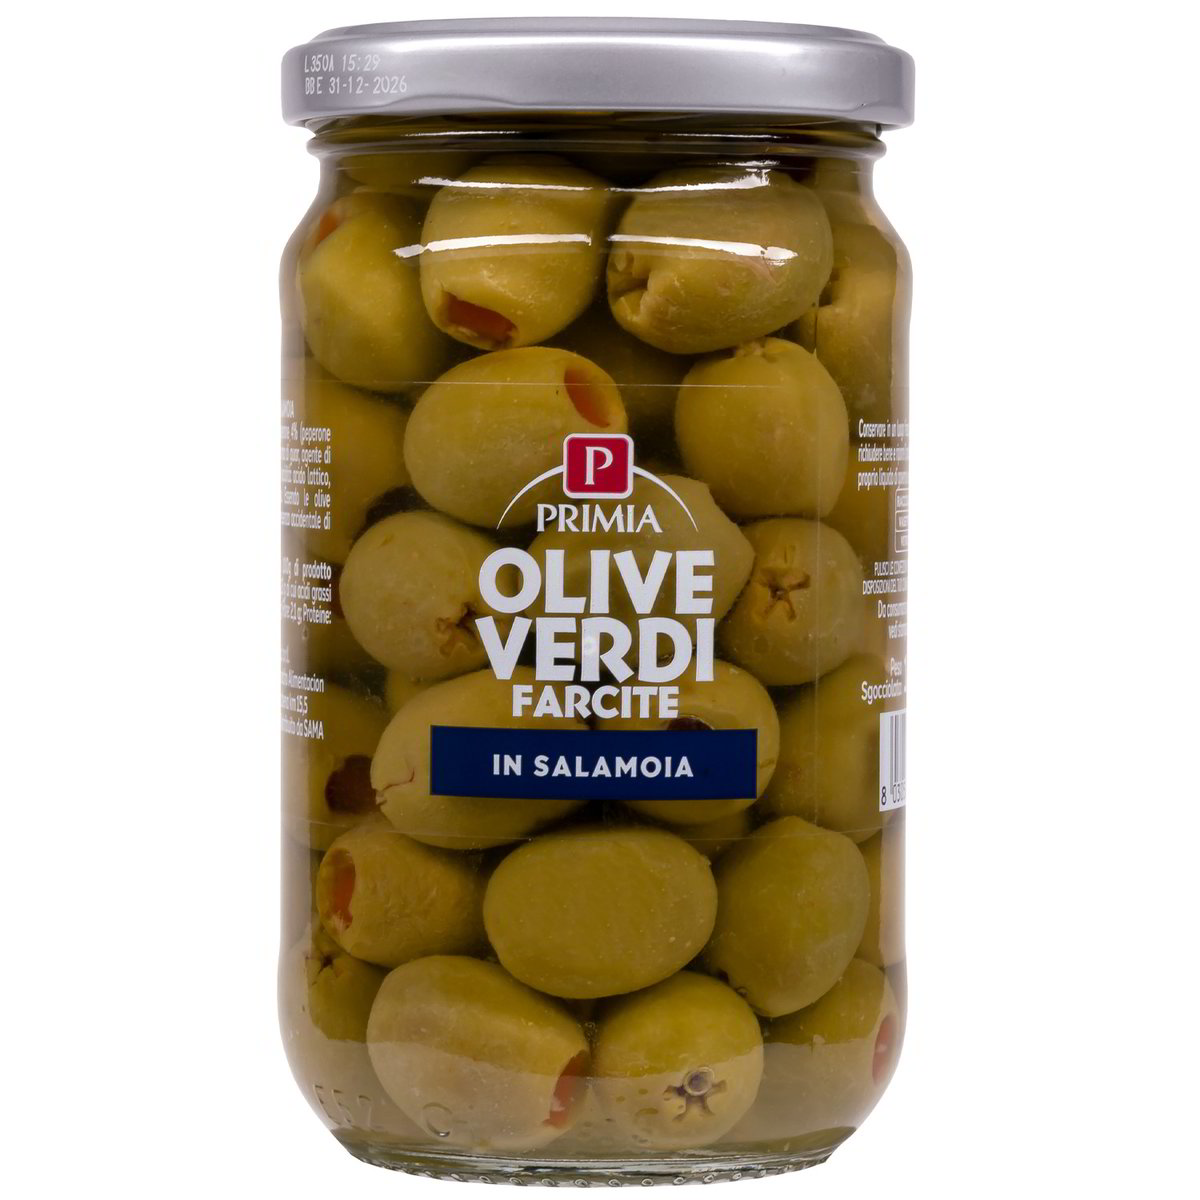 Olive verdi farcite in salamoia